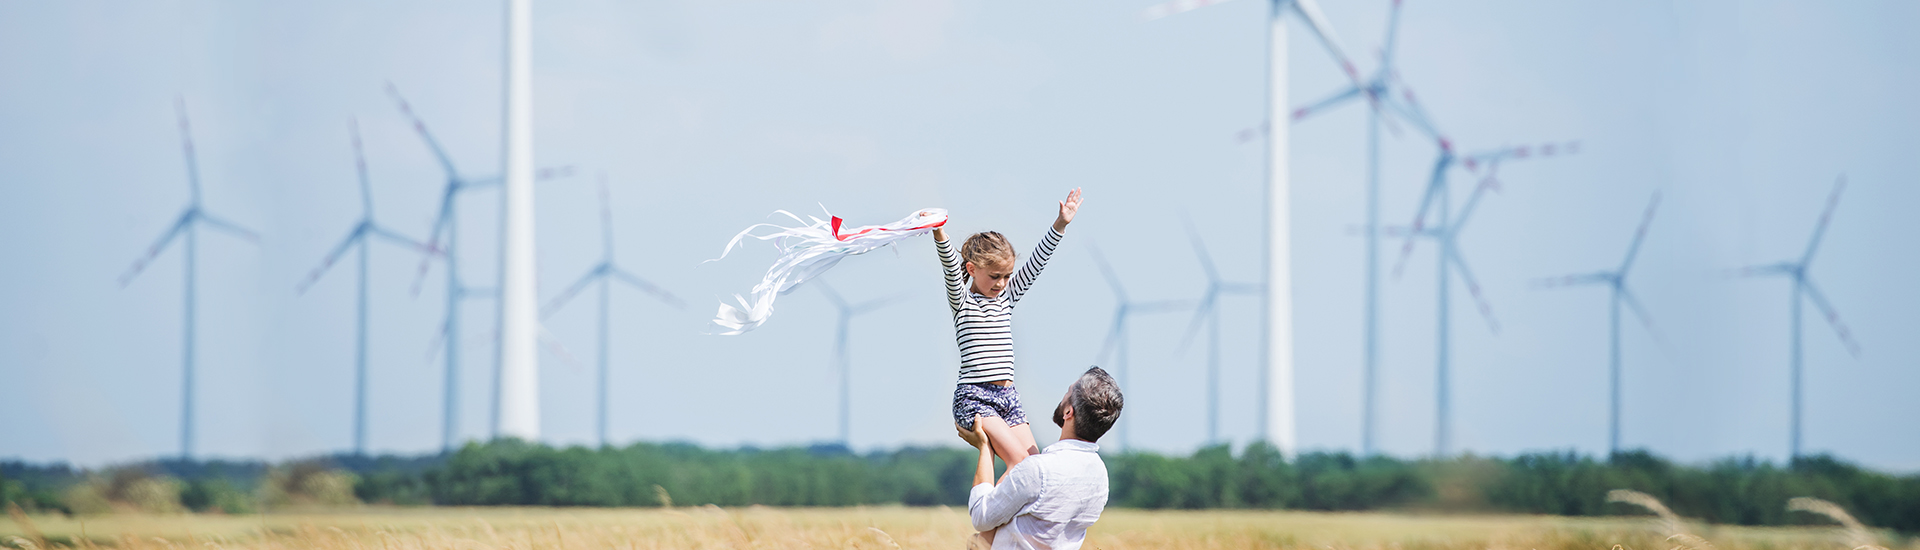 Ellerini havaya kaldırarak rüzgar güllerinin önünde babasıyla poz veren kız çocuğu fotoğrafı yer almaktadır.